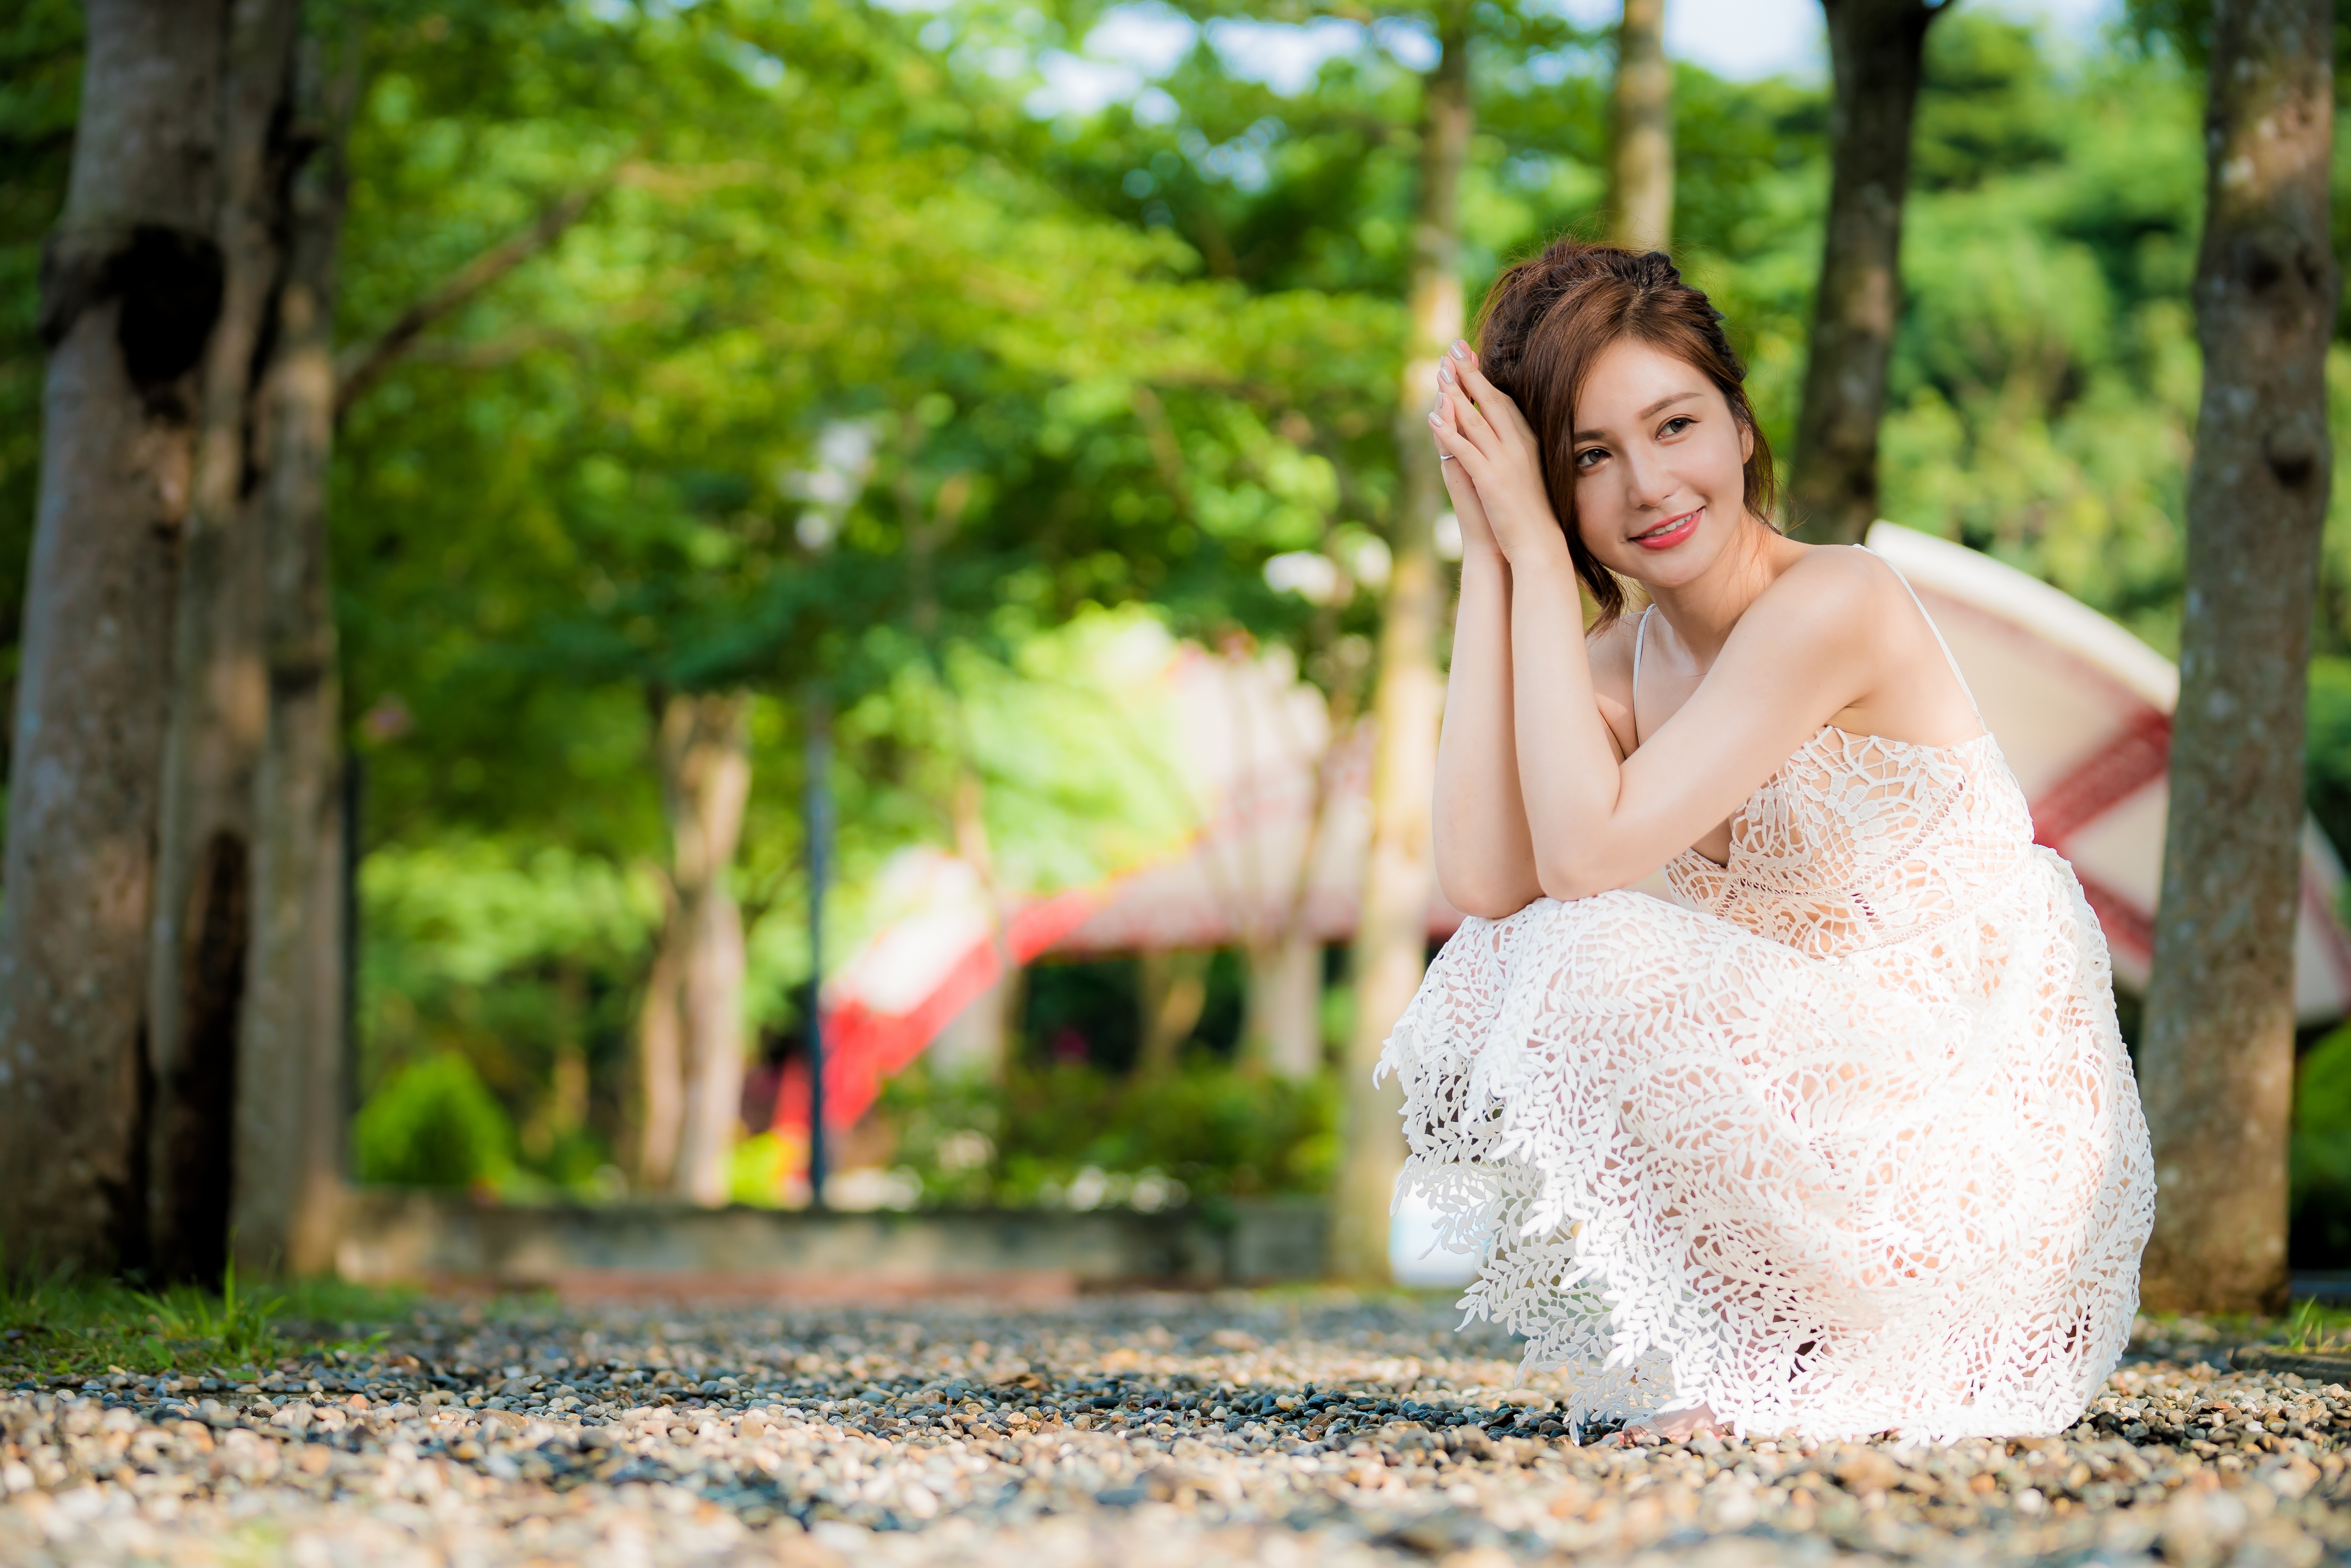 Asian Model Women Long Hair Brunette White Dress Squatting Trees Grass 4562x3043